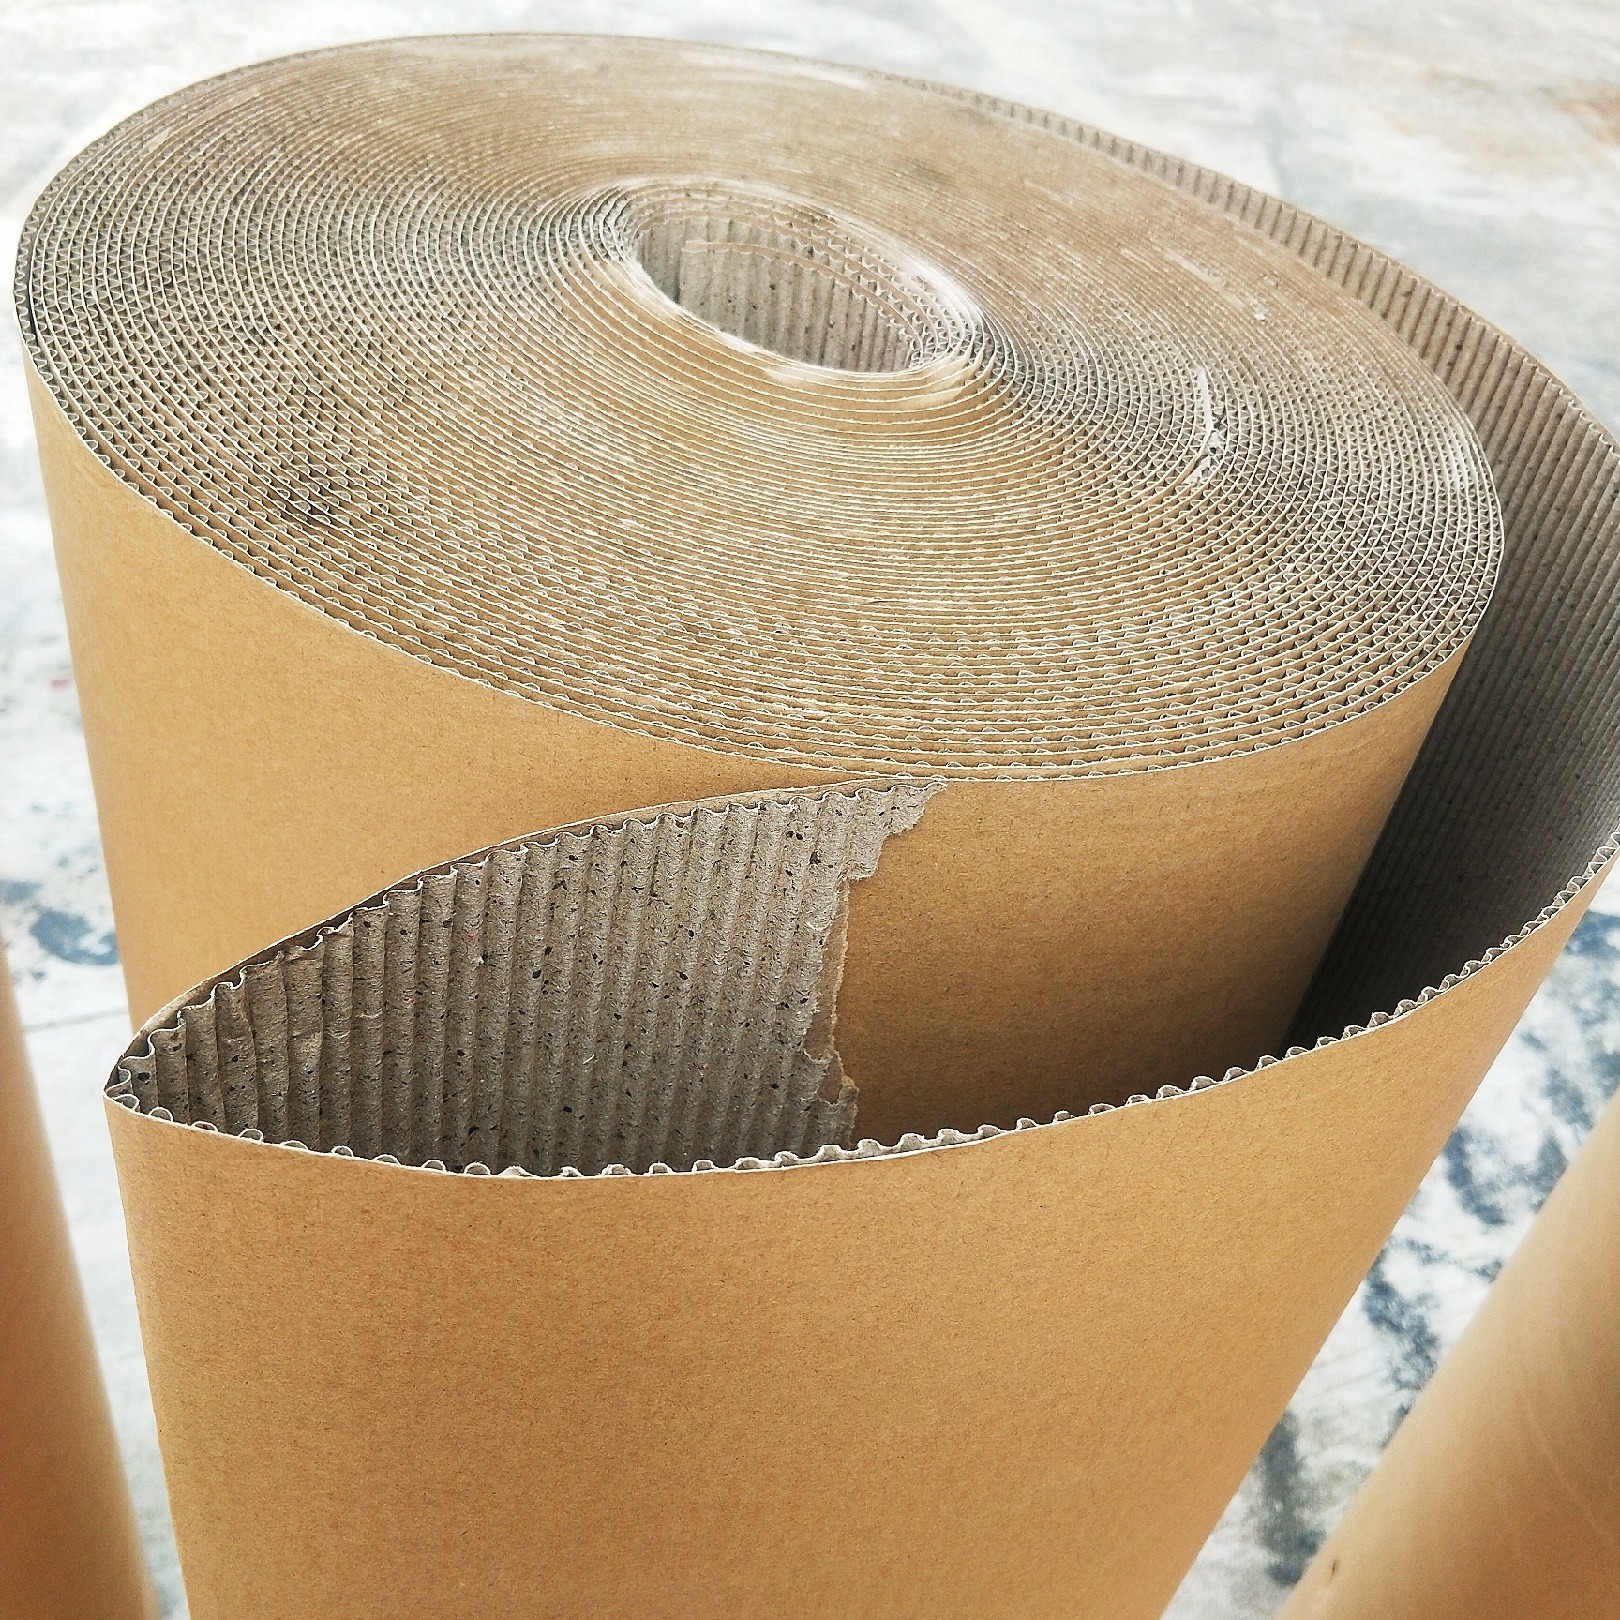 广州纸皮厂家 印字纸皮 打包纸皮 包装纸皮 全屋定制家具包装纸皮厂家